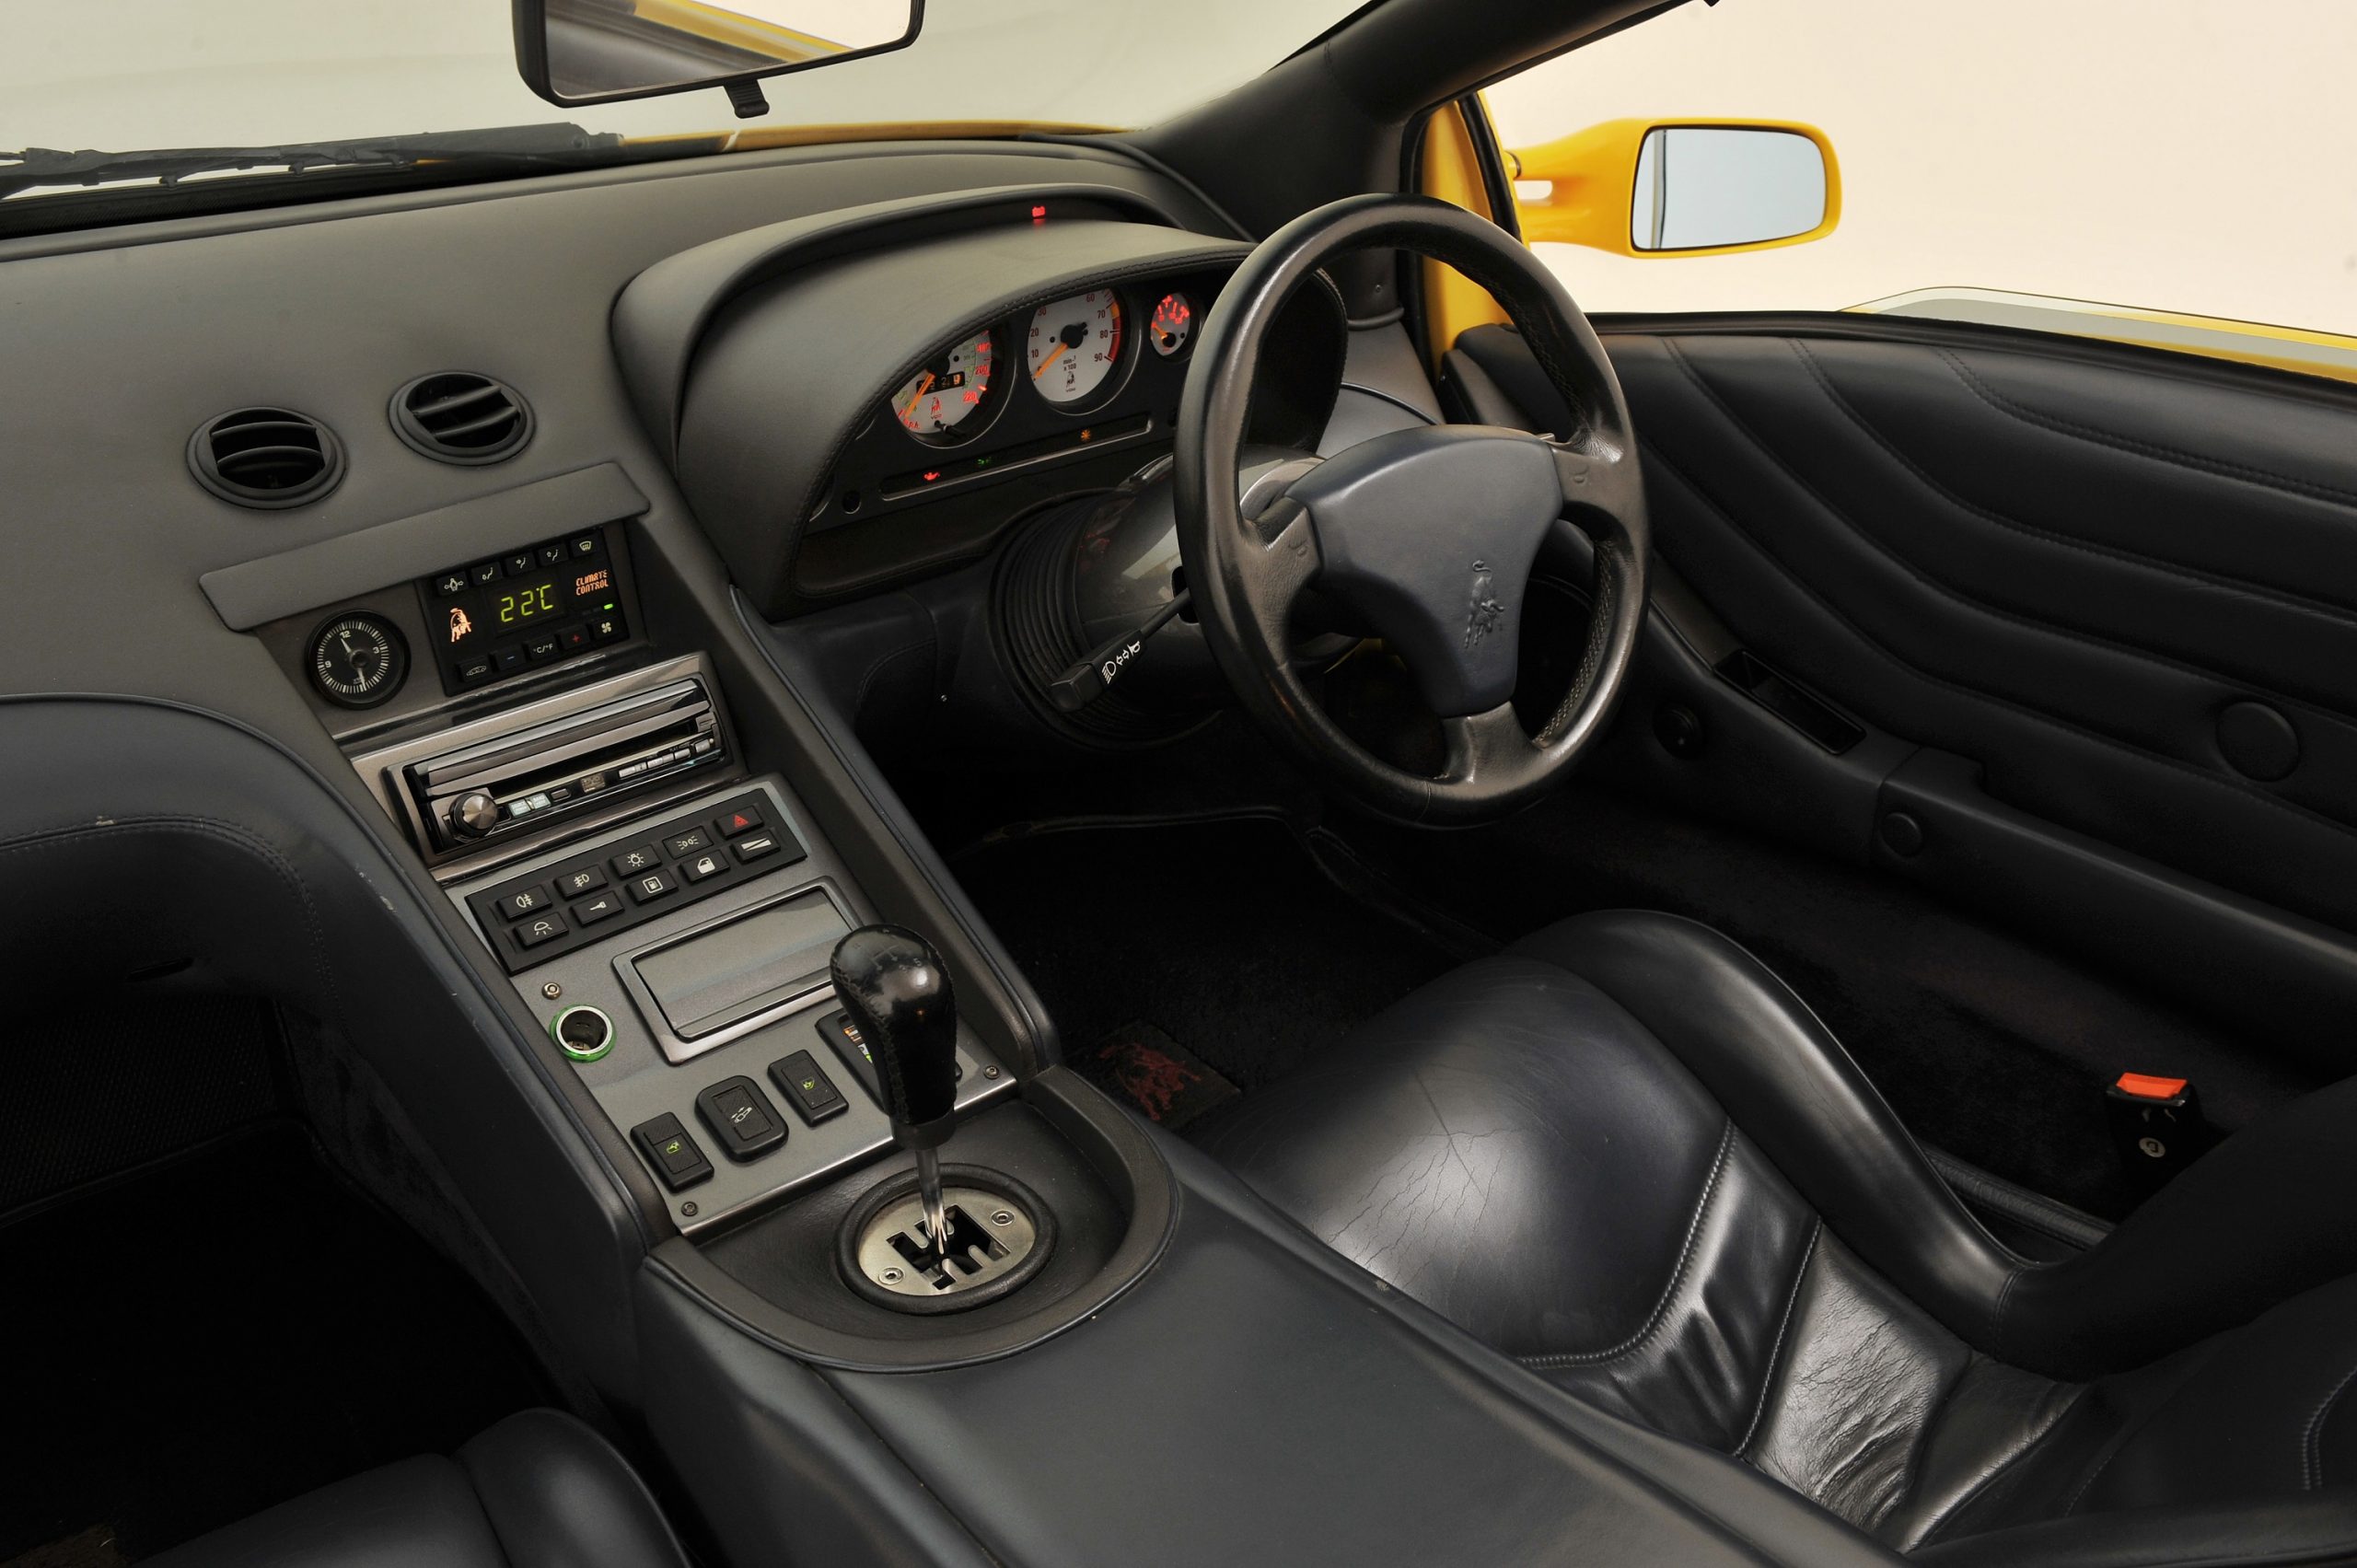 The interior of a Lamborghini Diablo super car